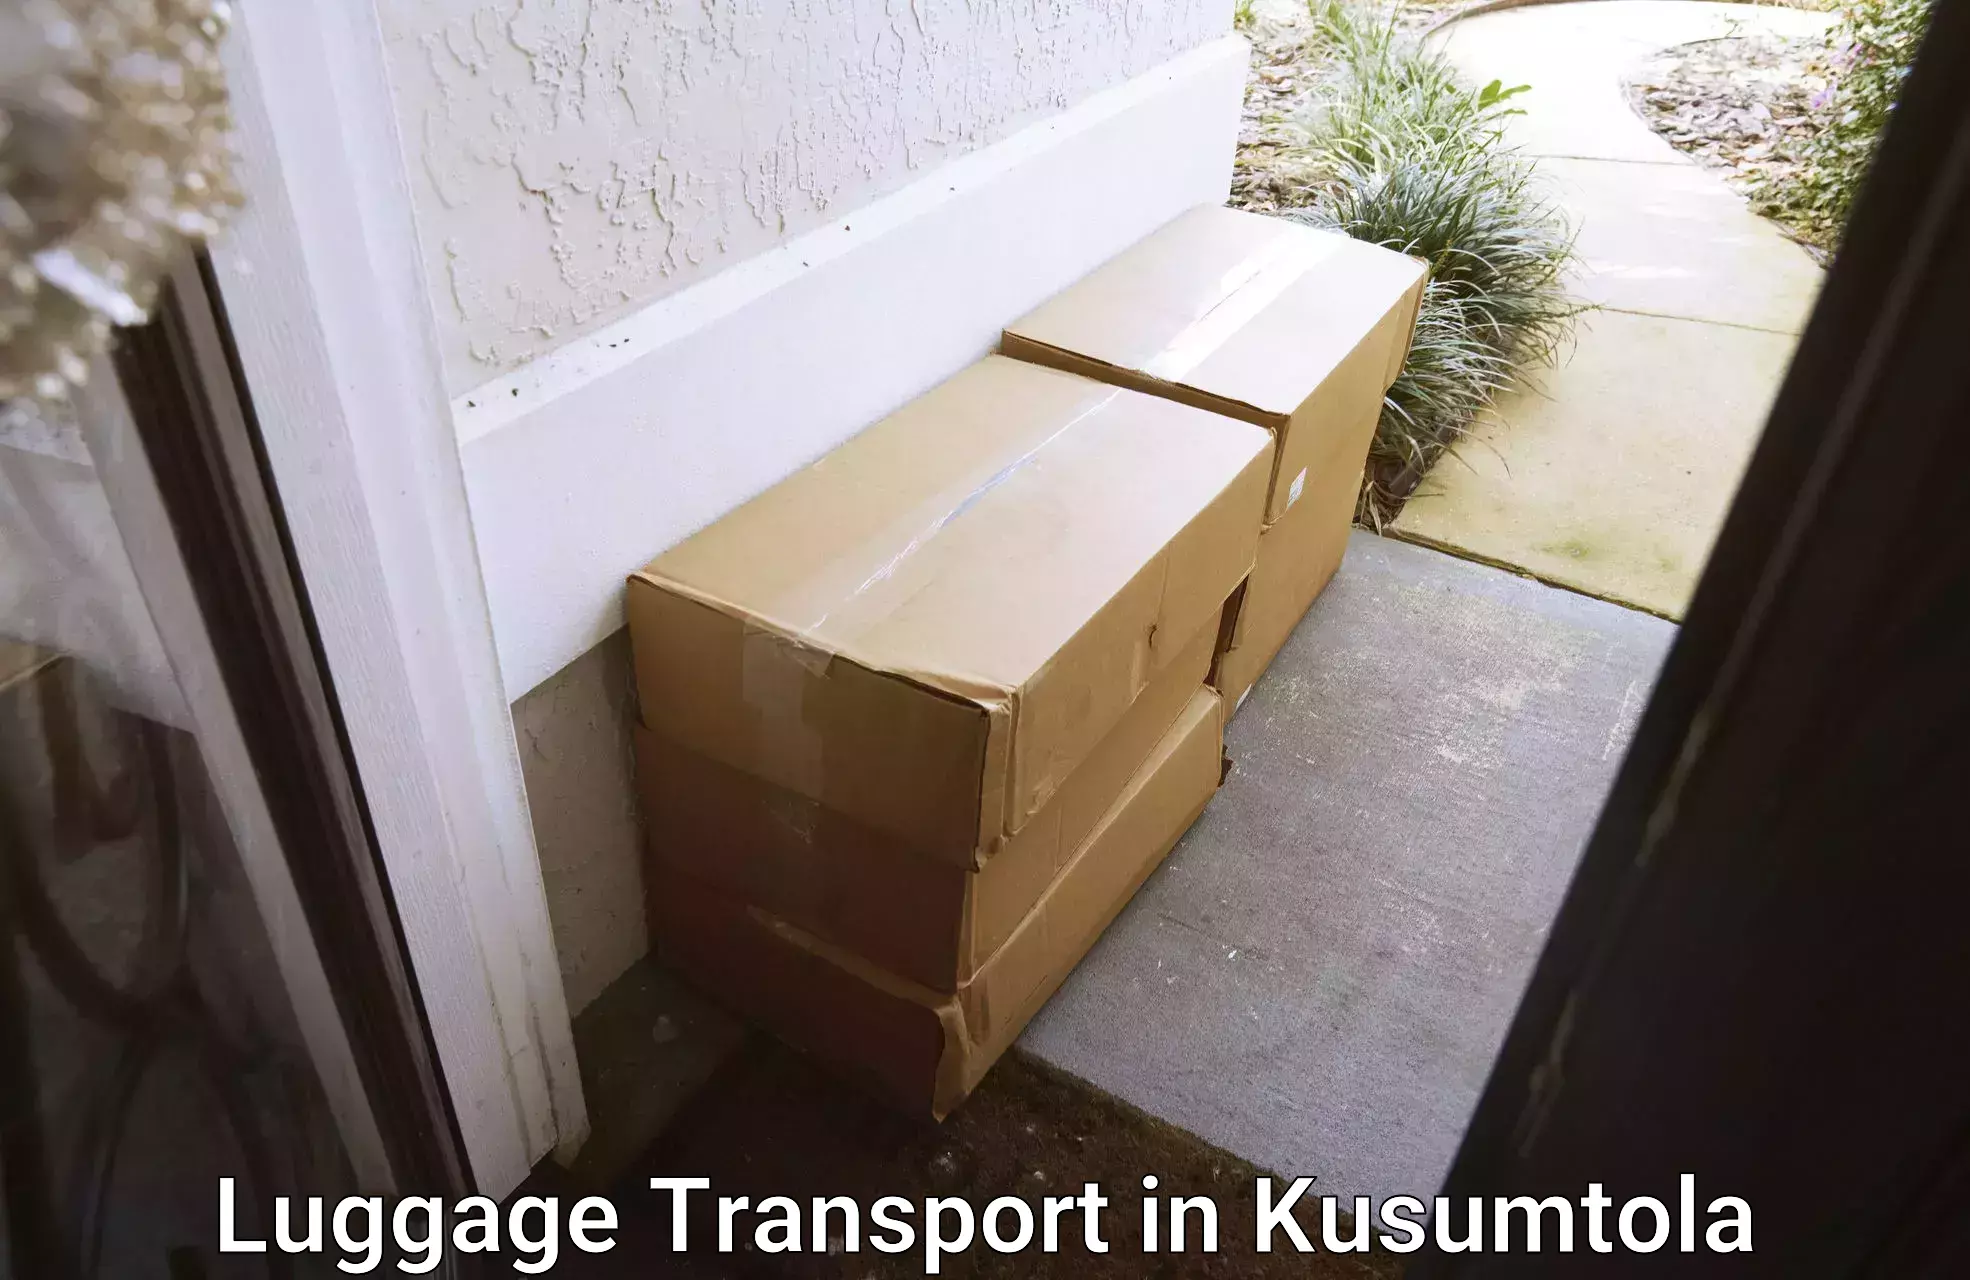 Luggage shipping estimate in Kusumtola